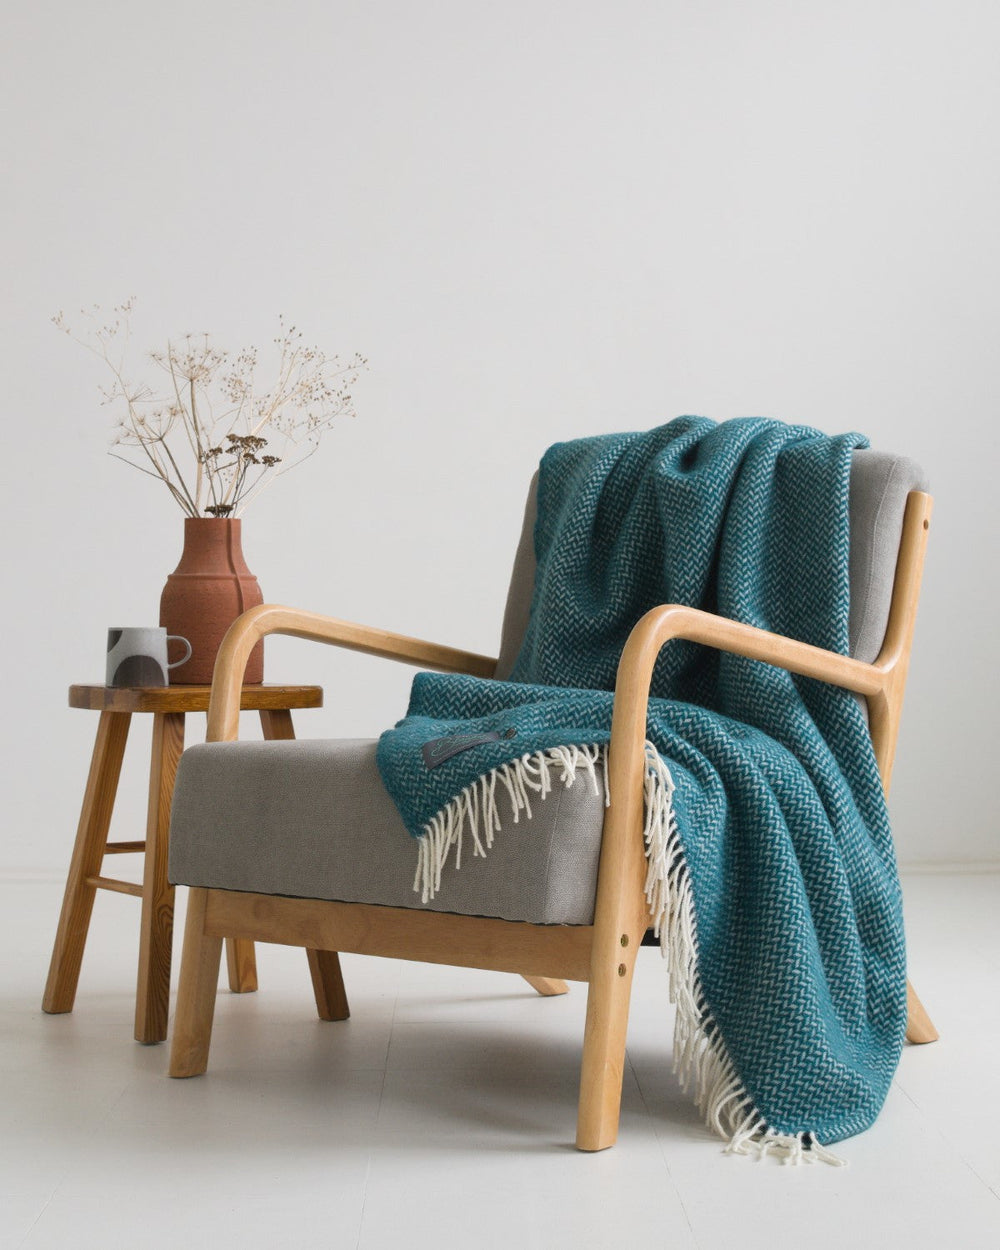 Green herringbone wool blanket draped over a lounge chair